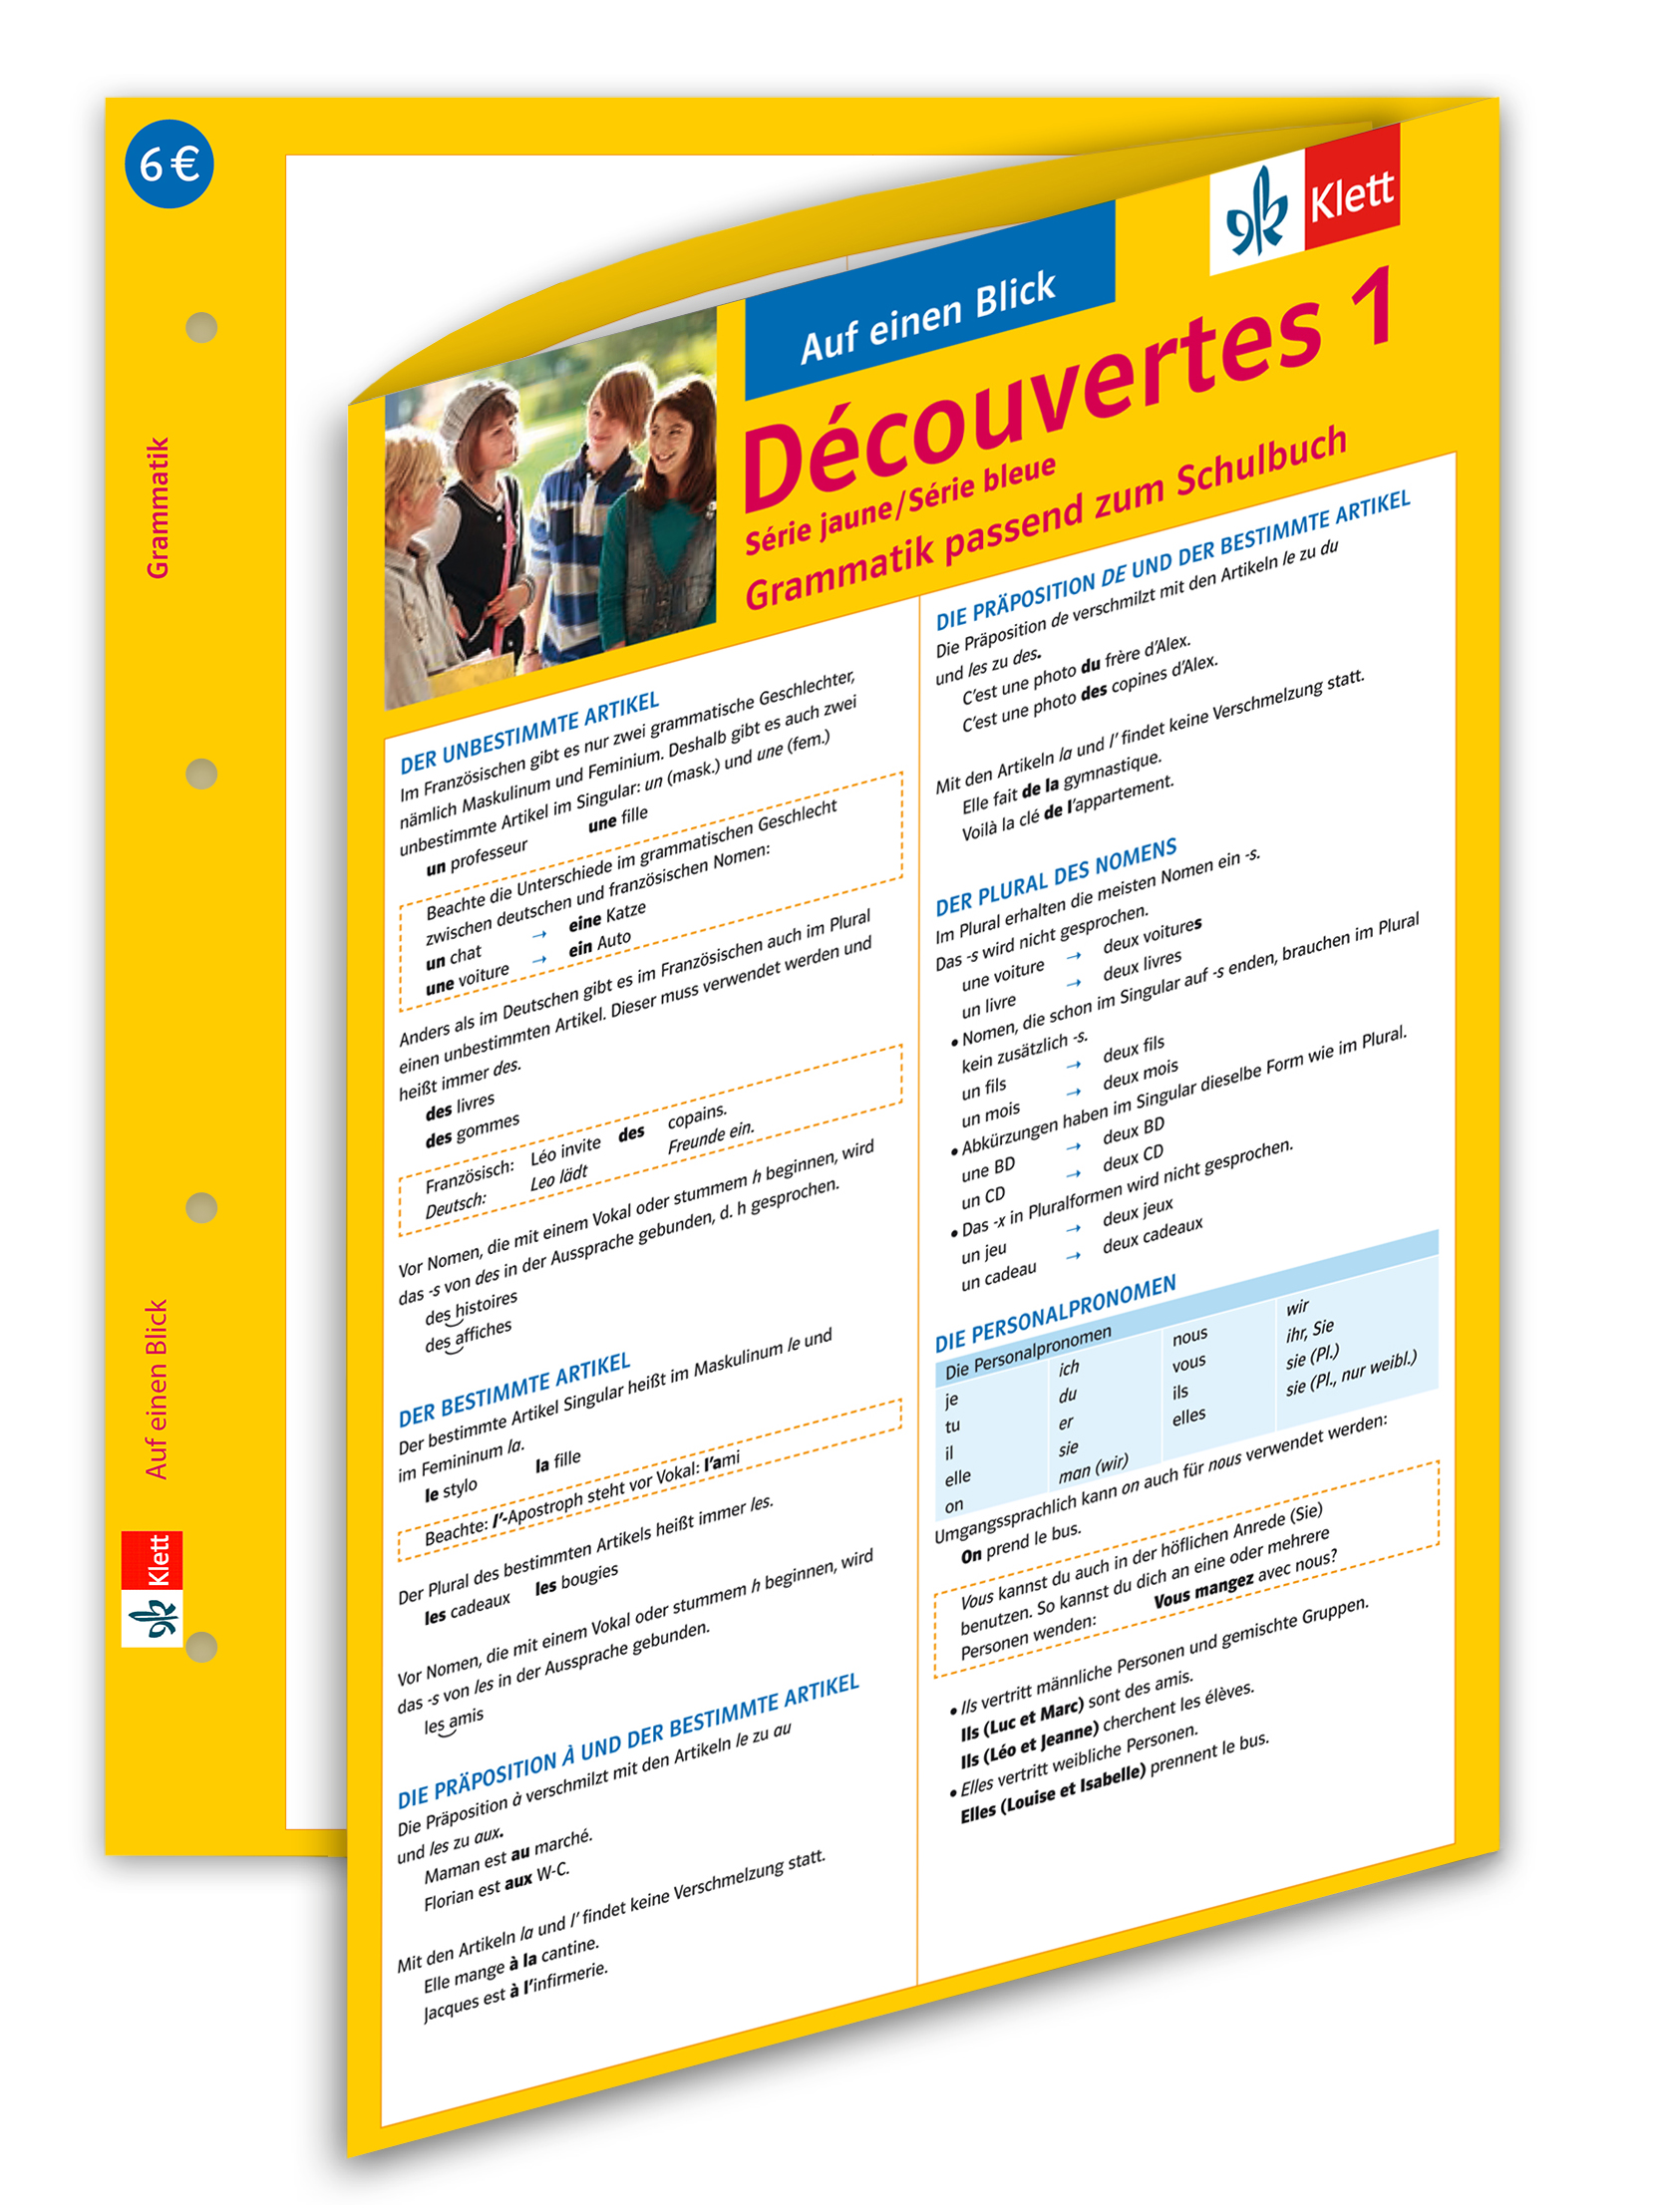 Découvertes Série jaune / Série bleue 1 - Auf einen Blick